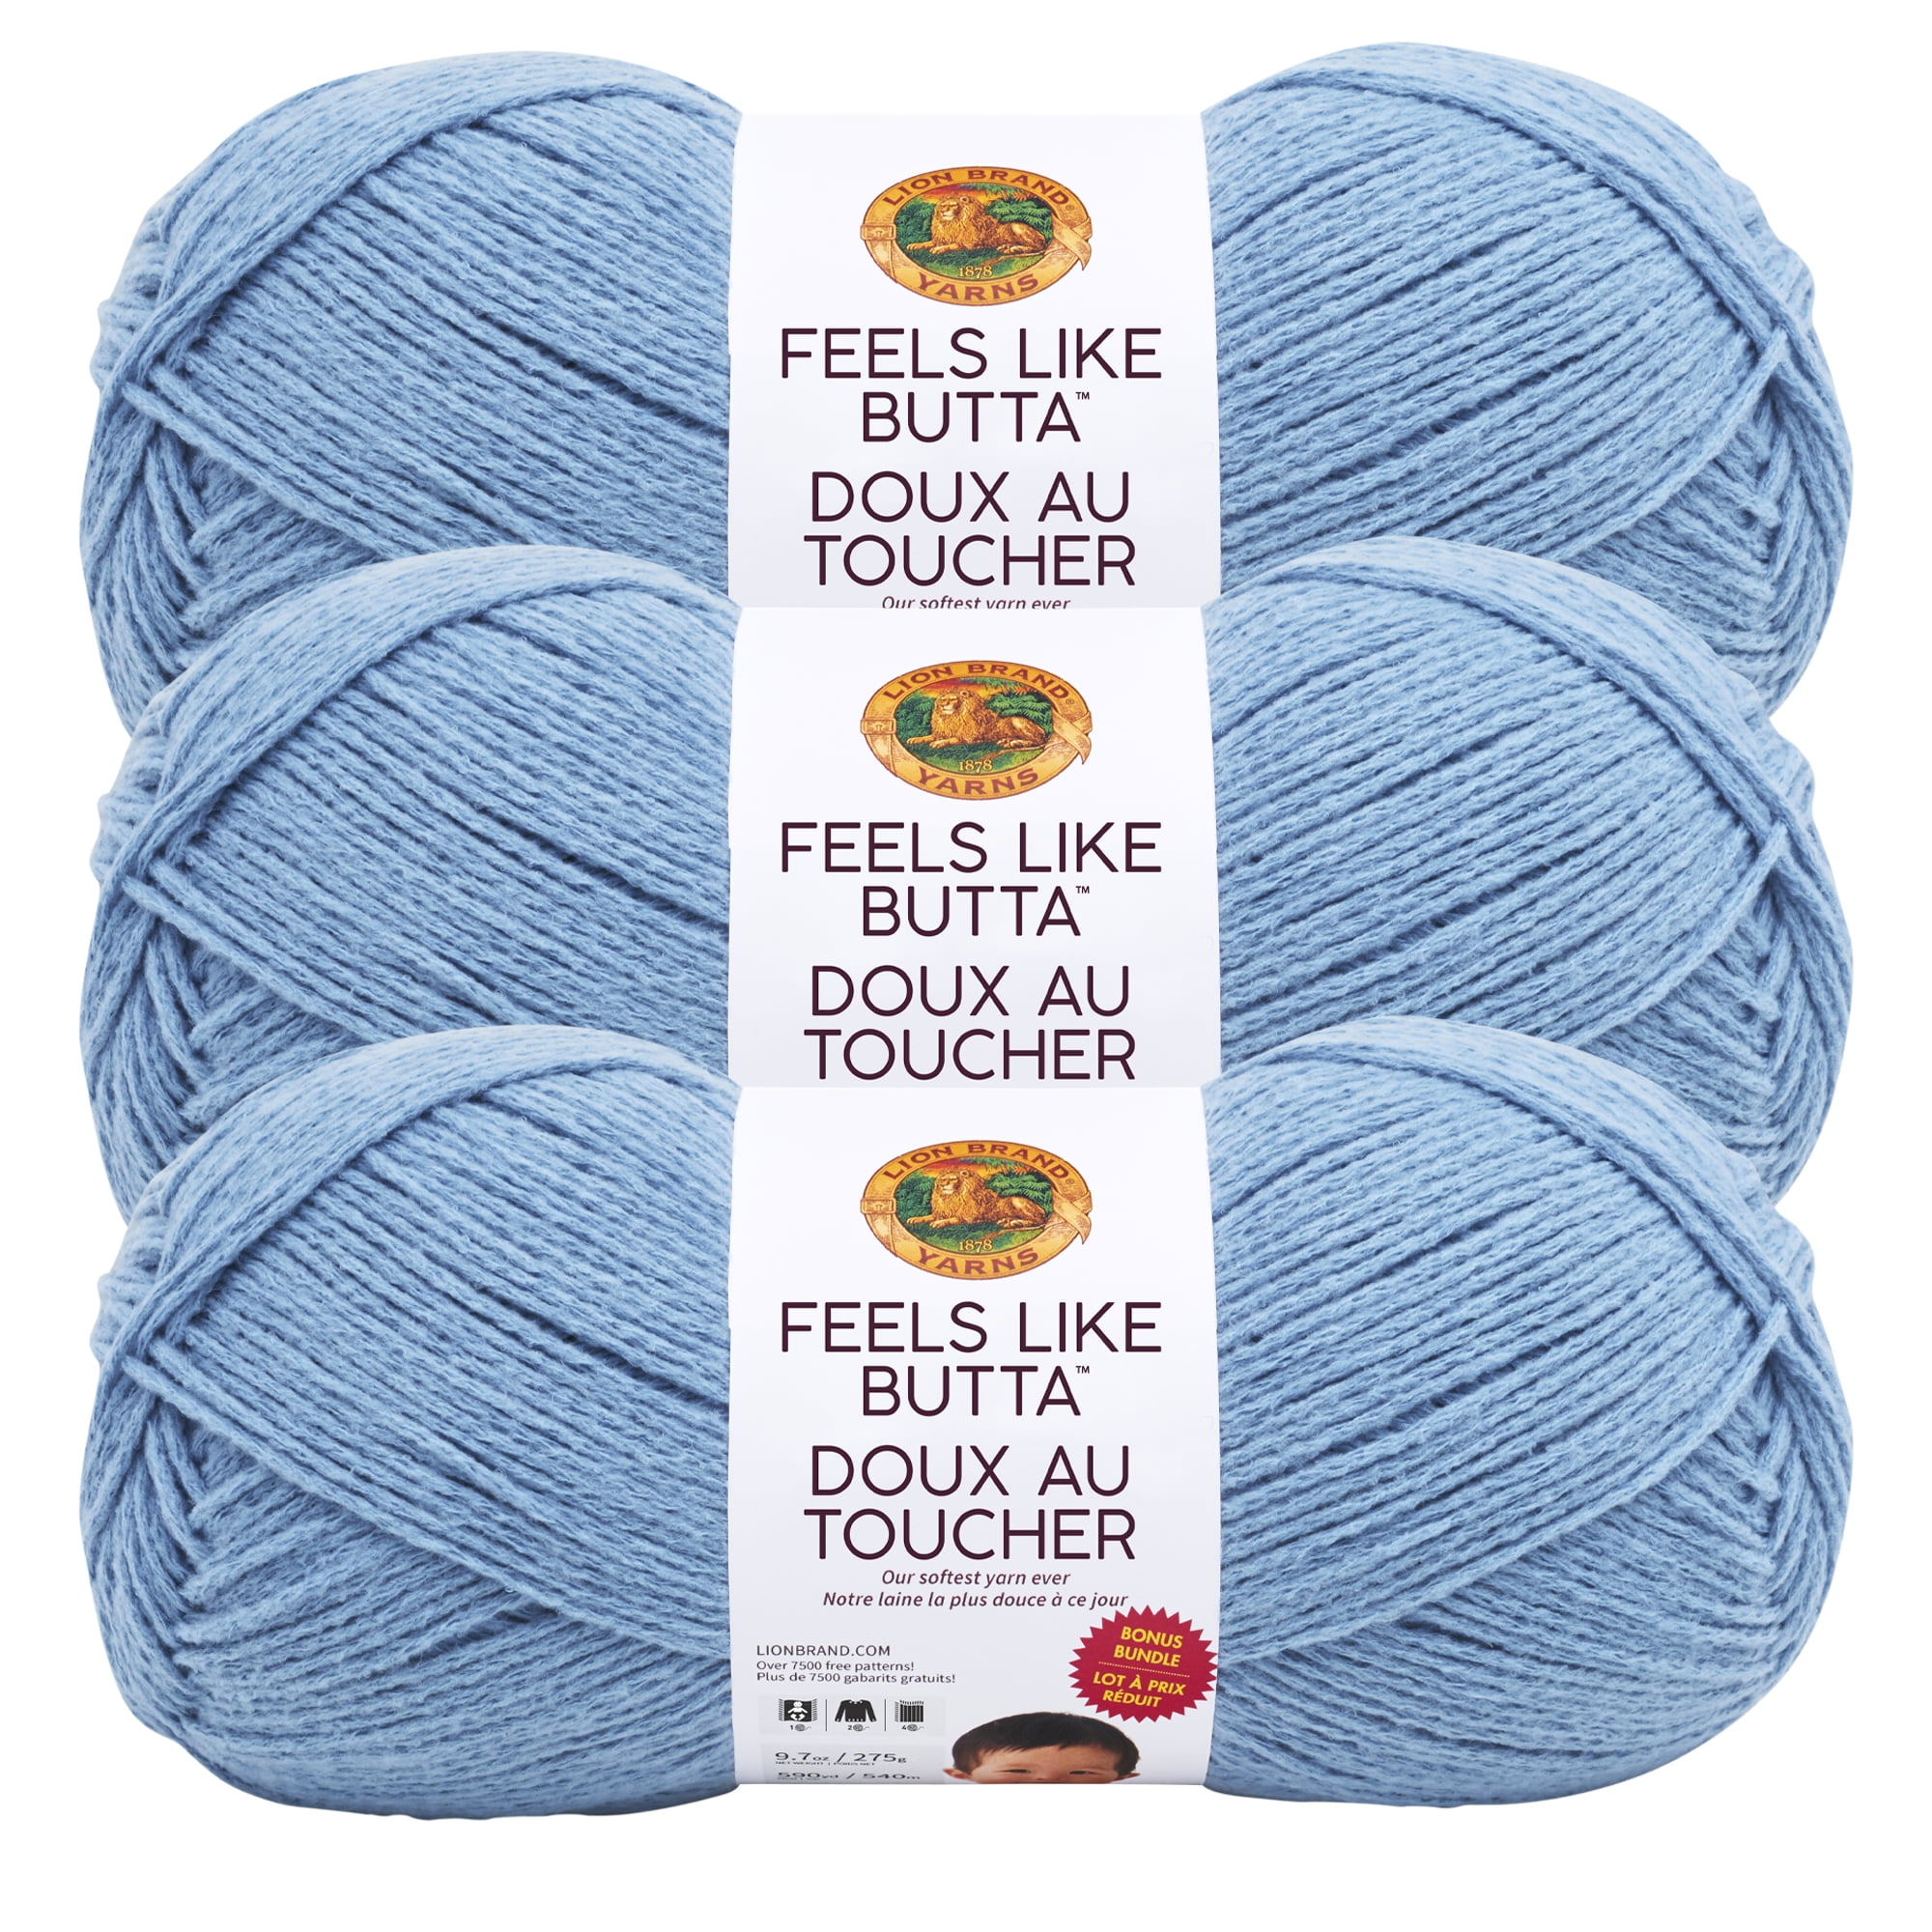 Lion Brand Feels Like Butta Yarn-Dusty Blue, 1 count - Kroger